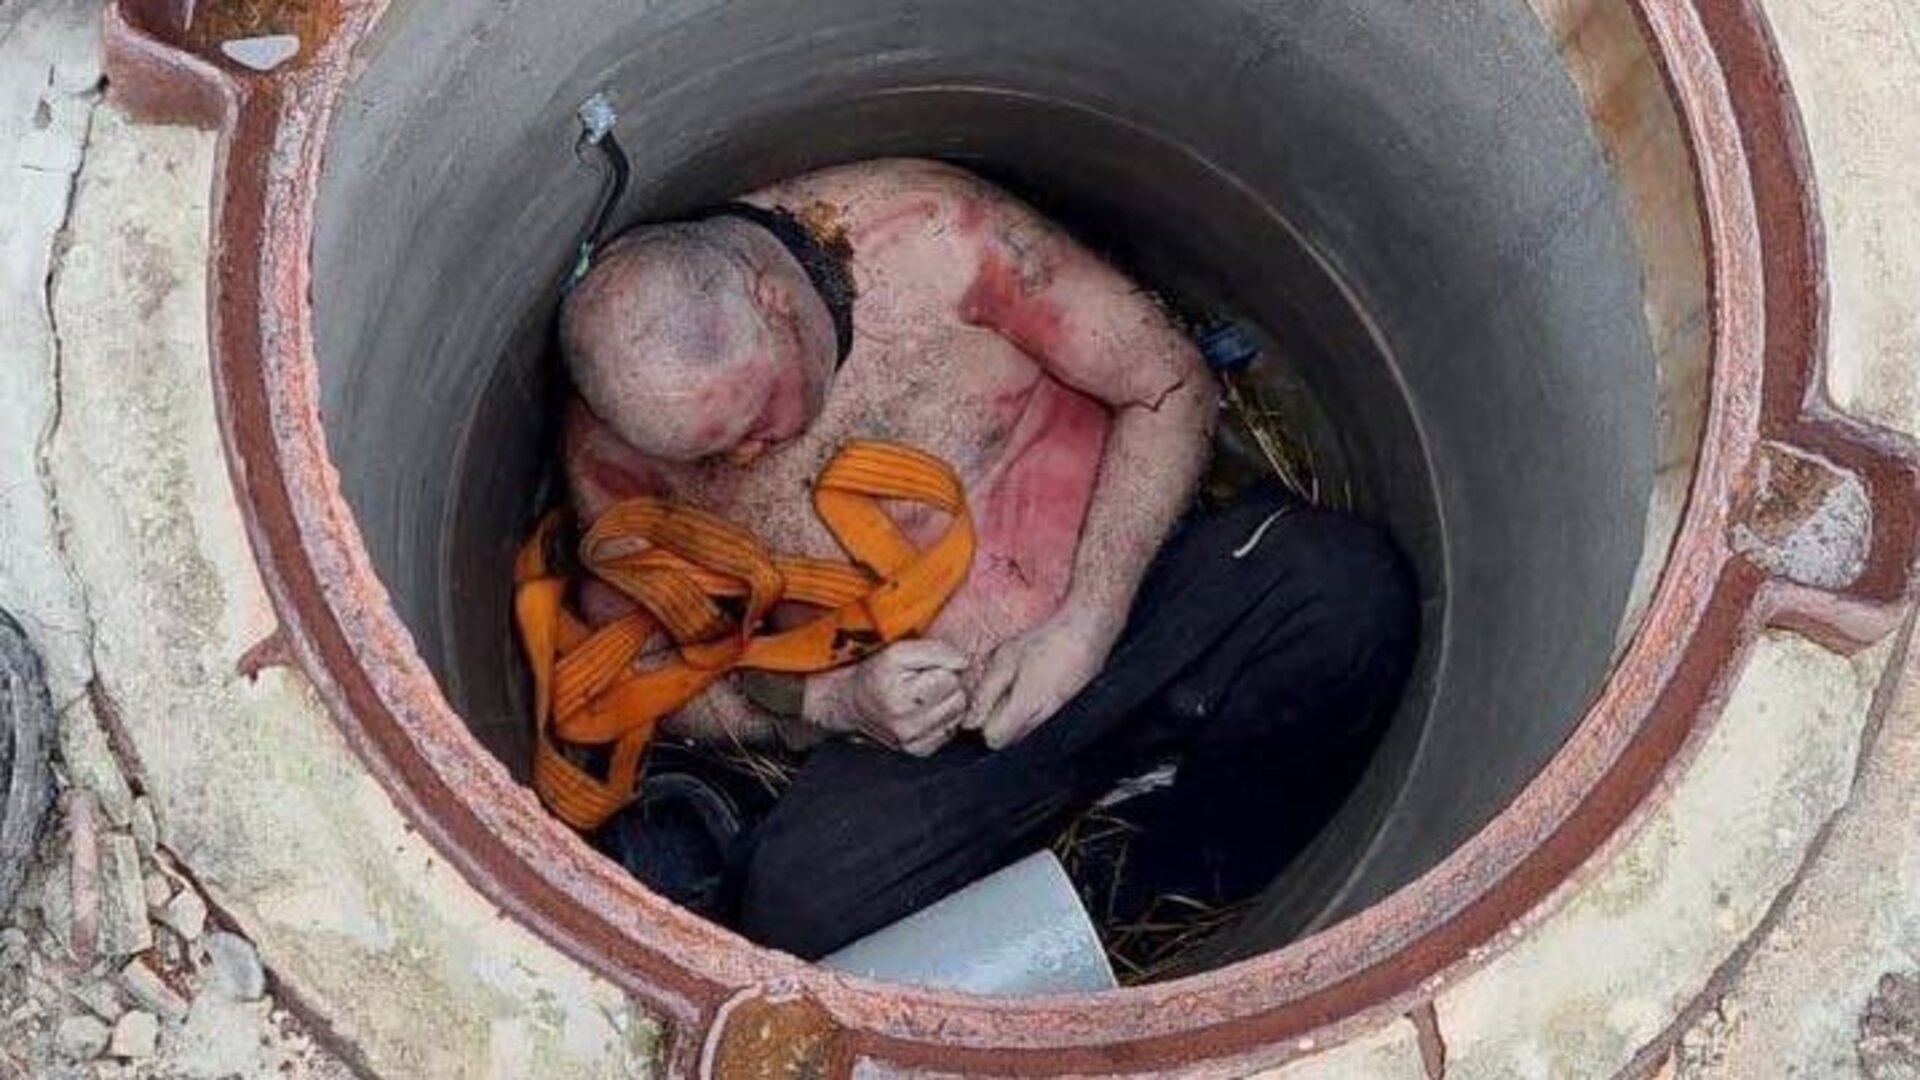 El cuerpo de un hombre con signos de tortura fue arrojado a un desagüe 